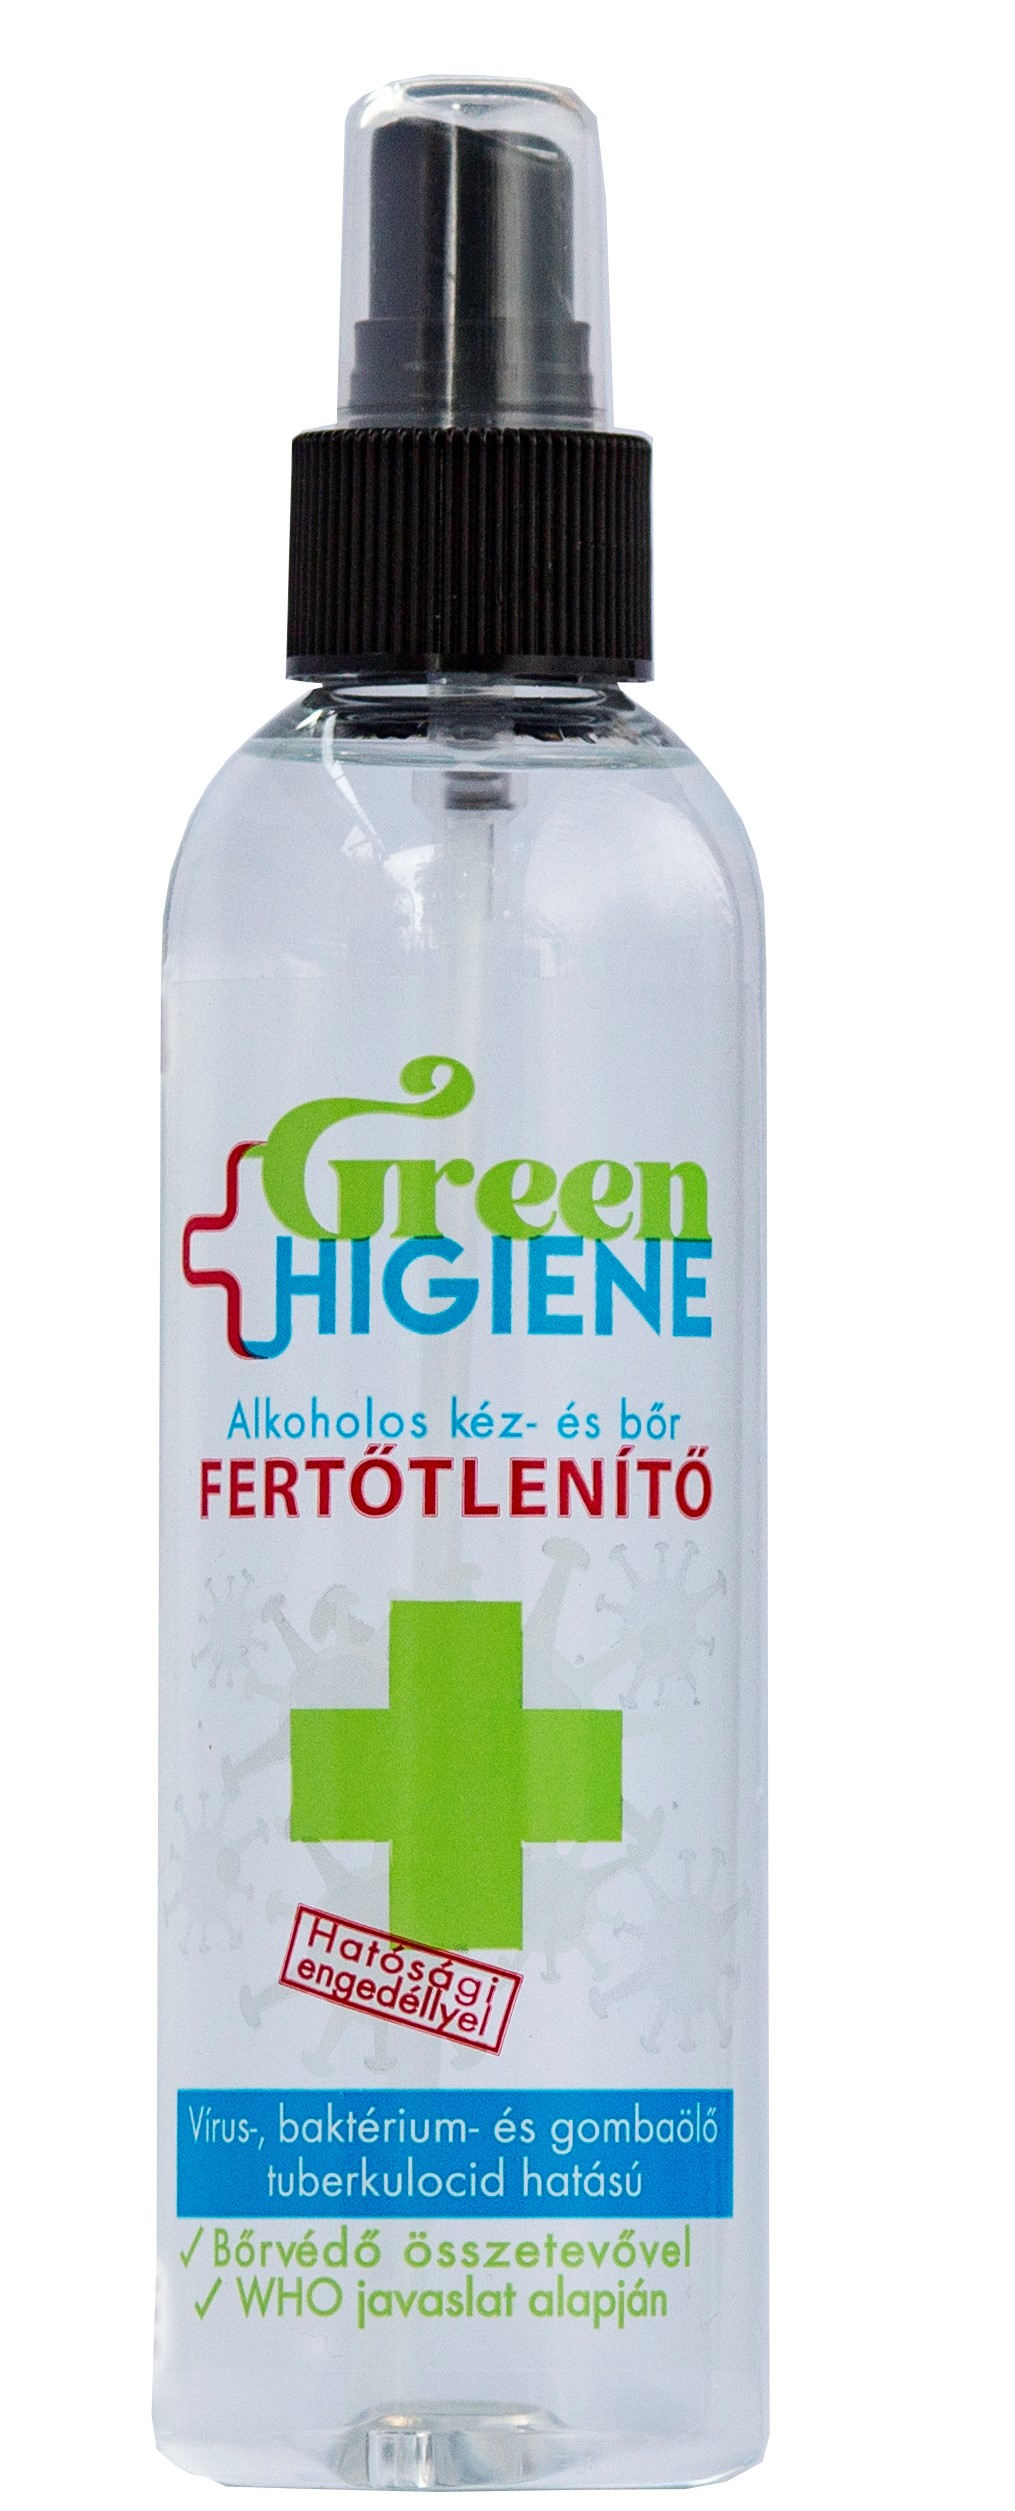 Green Higiene Alkoholos Kéz- és bőrfertőtlenítő folyadék szórófejjel 200 ml